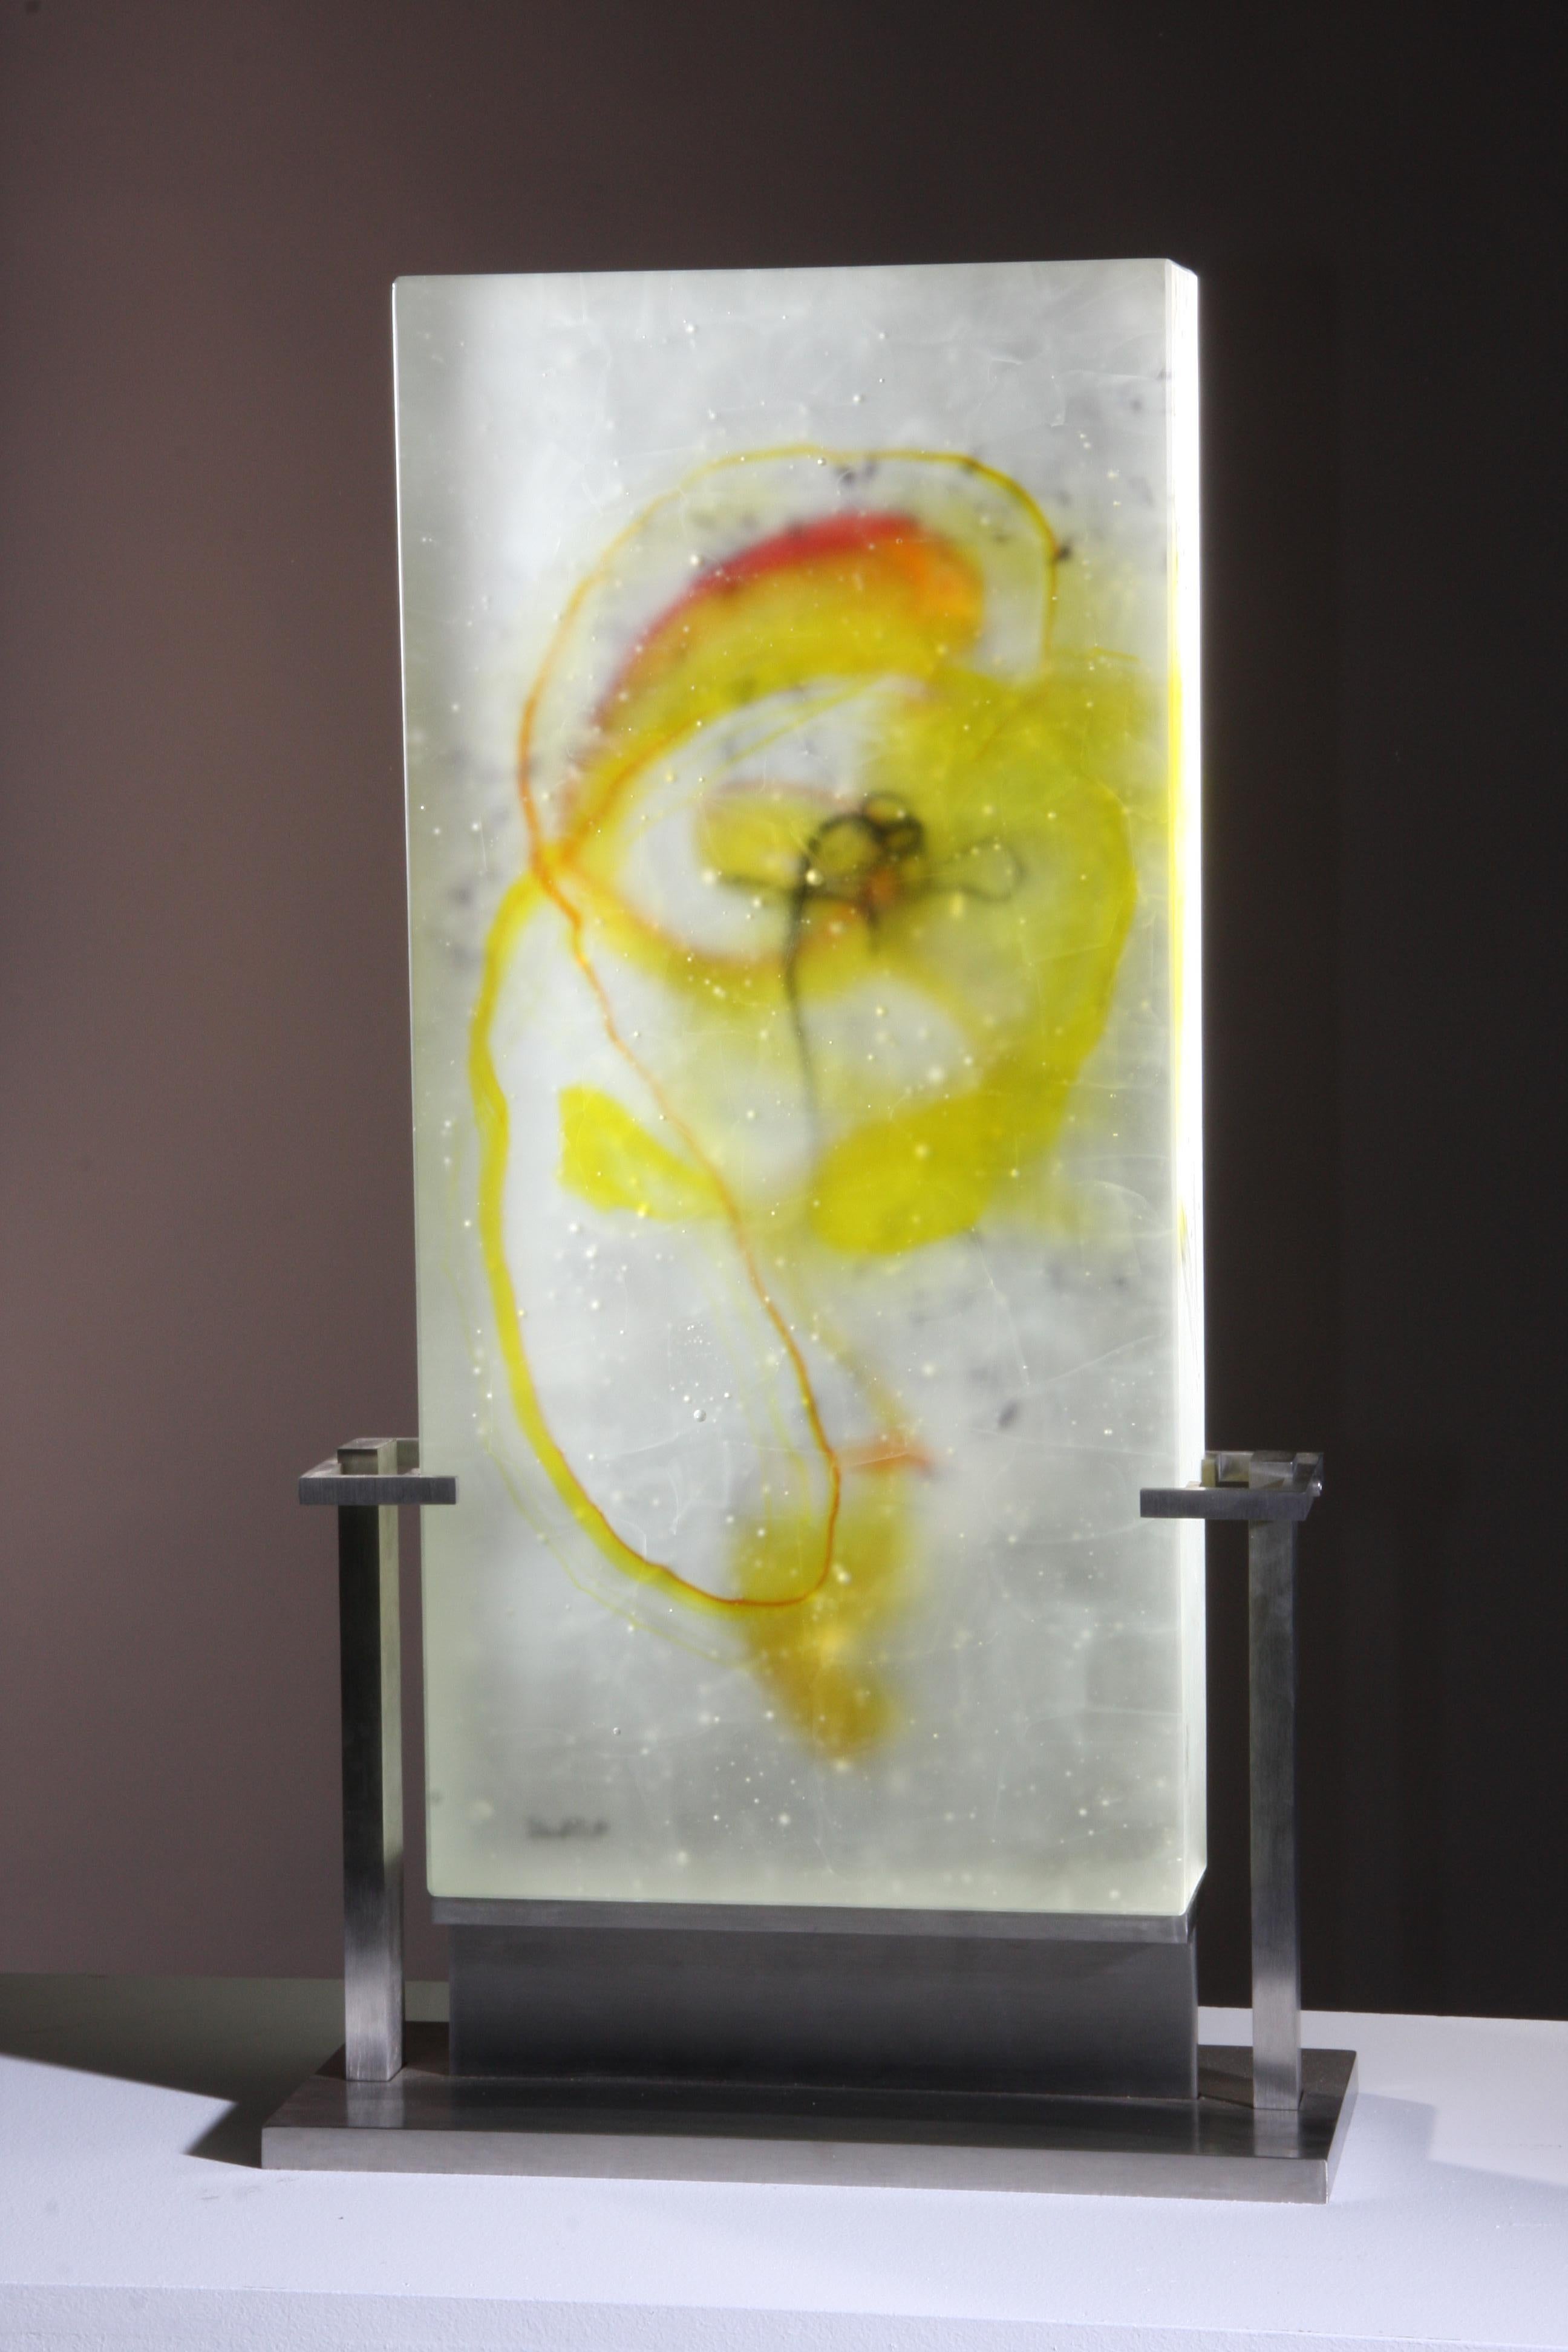 Abstract Cast Glass Sculpture, 'Dar Zubi', 2008 by David Ruth